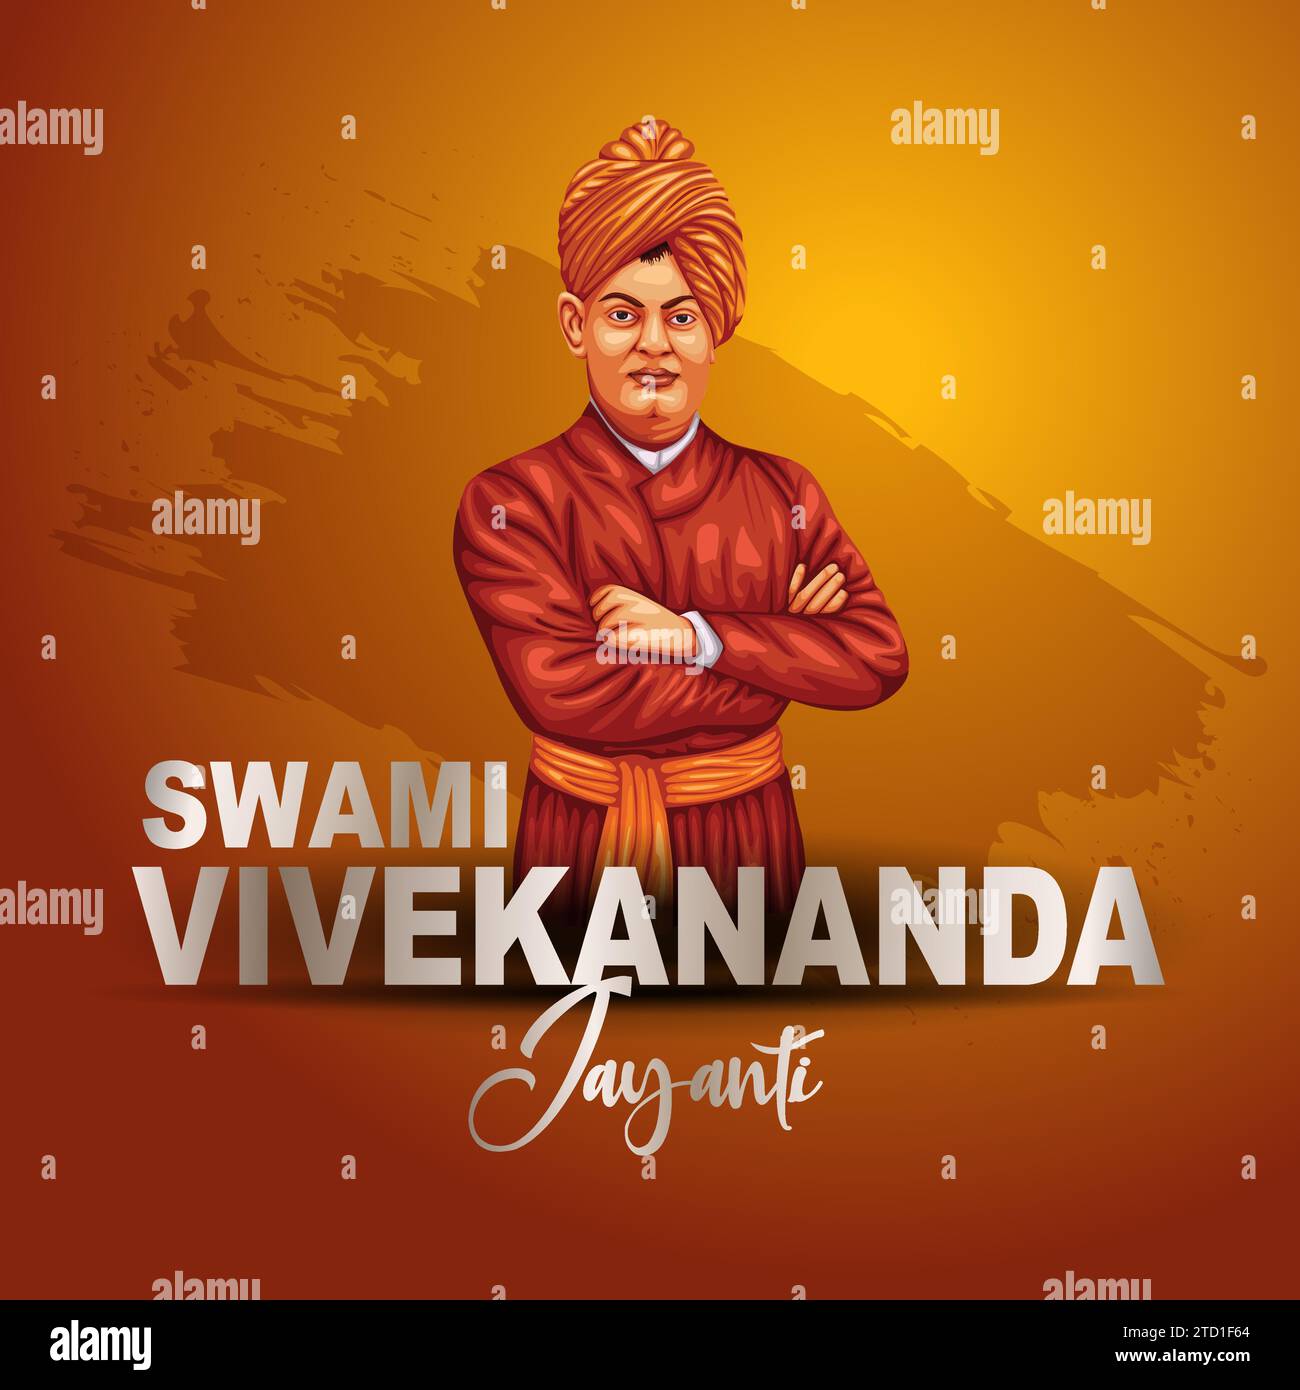 Felice Swami Vivekananda Jayanti. Una celebrazione della tipografia della Gioventù dell'India con grafica mnemonica, celebra, unità, logo, disegno grafico. abstrac Illustrazione Vettoriale